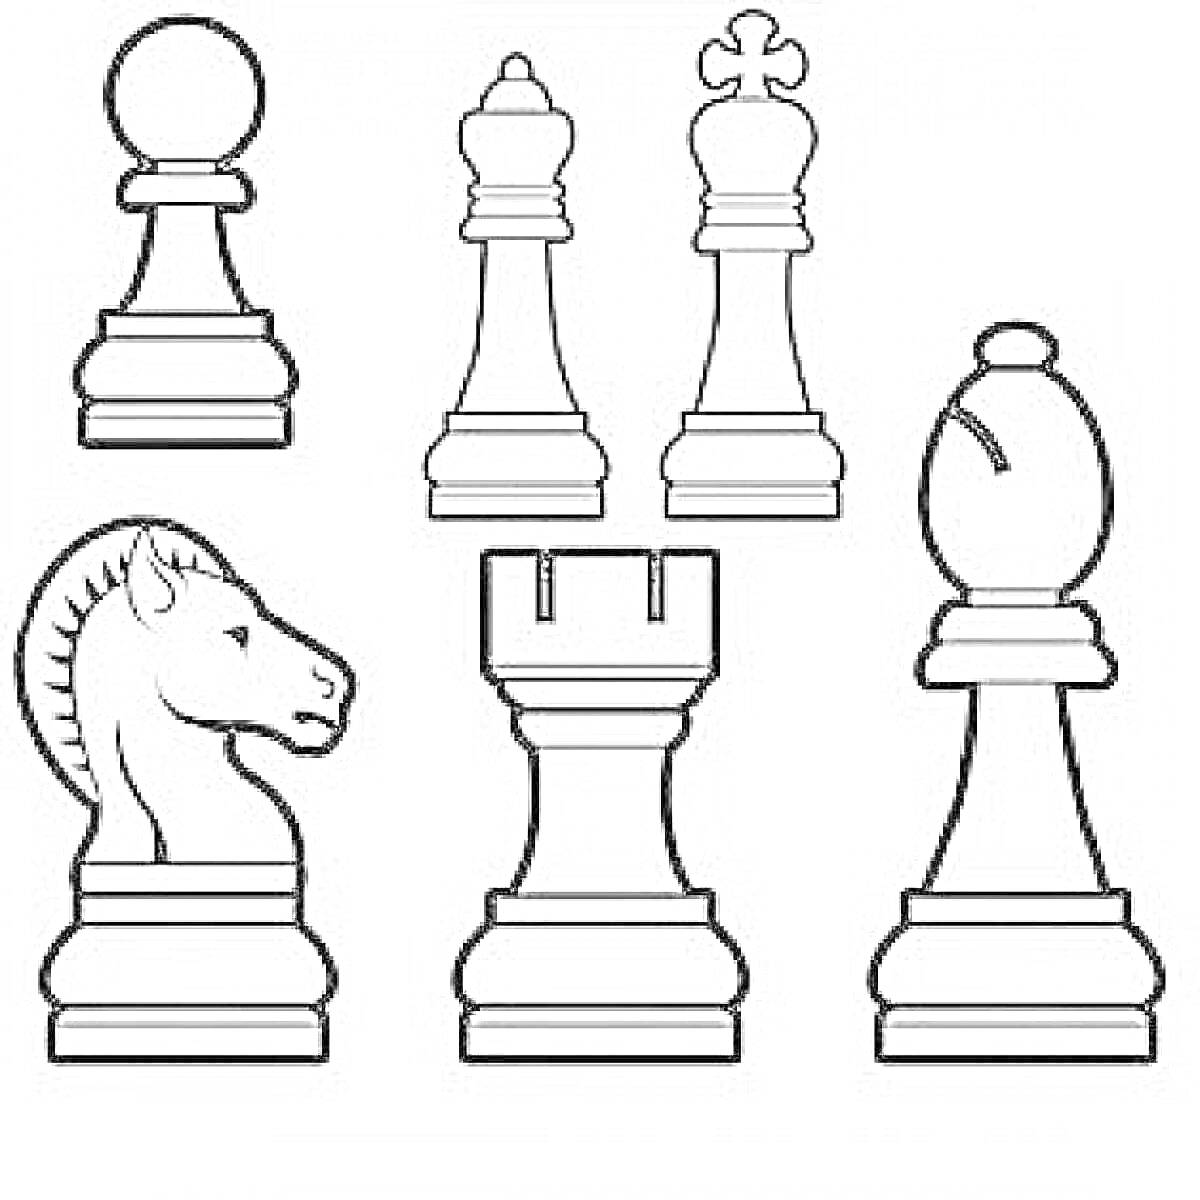 шахматные фигуры (пешка, король, ферзь, конь, ладья, слон)